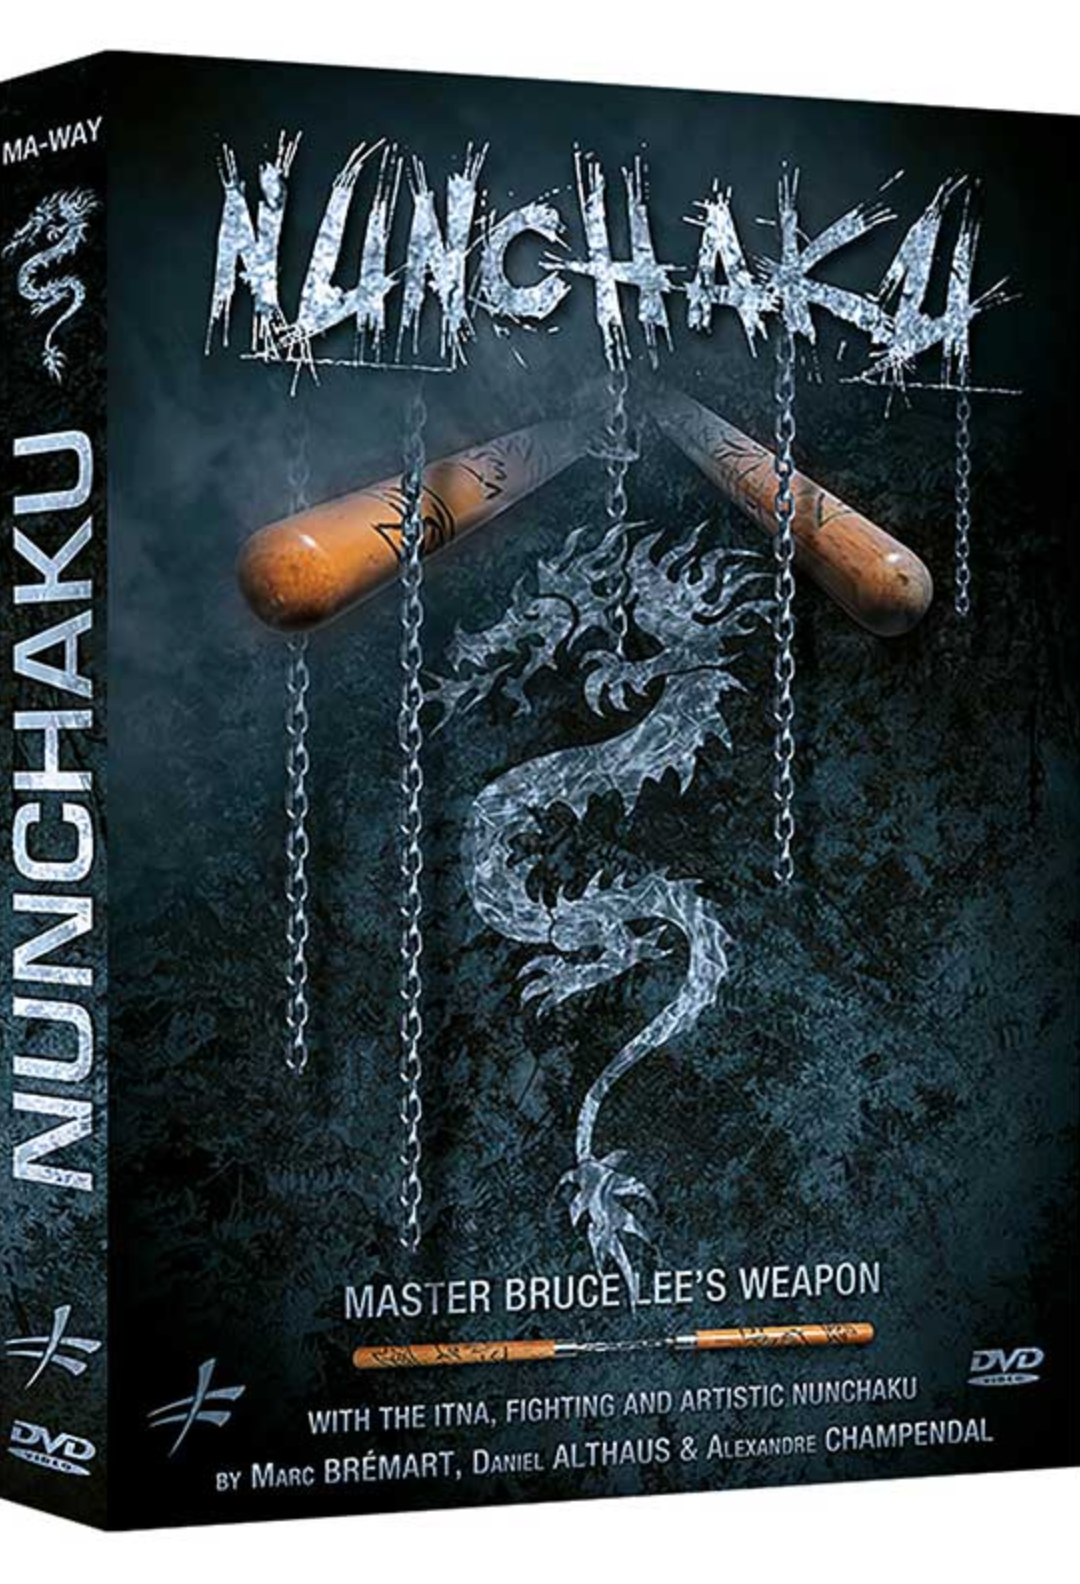 Nunchaku - DVD del arma del maestro Bruce Lee